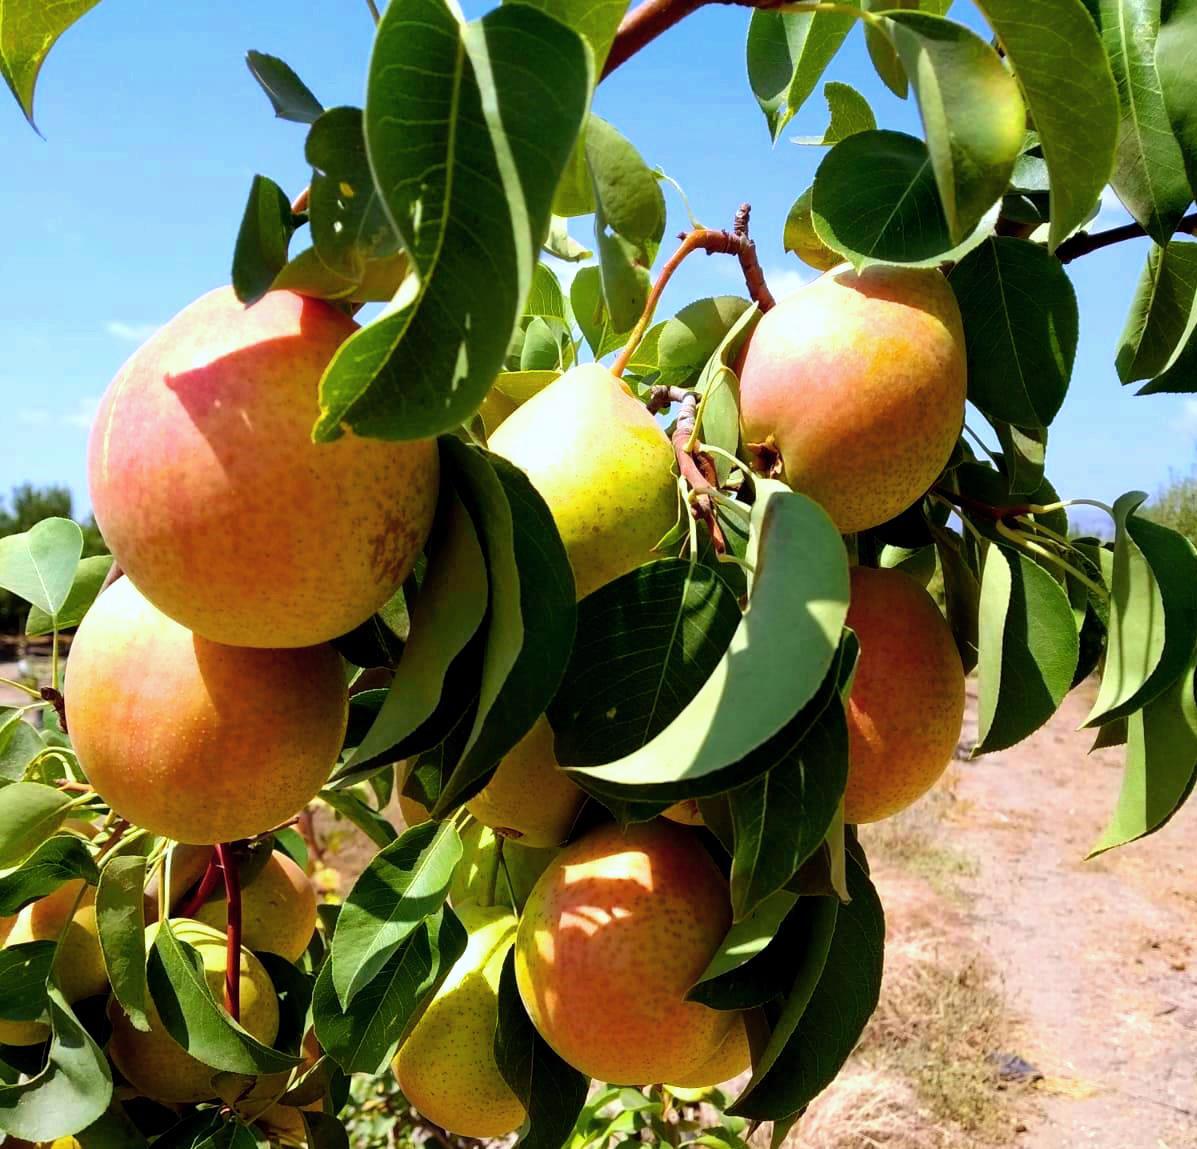 ארגון מגדלי הפירות: לראשונה שיווק מסחרי של זן האגס הישראלי החדש 'עדן'